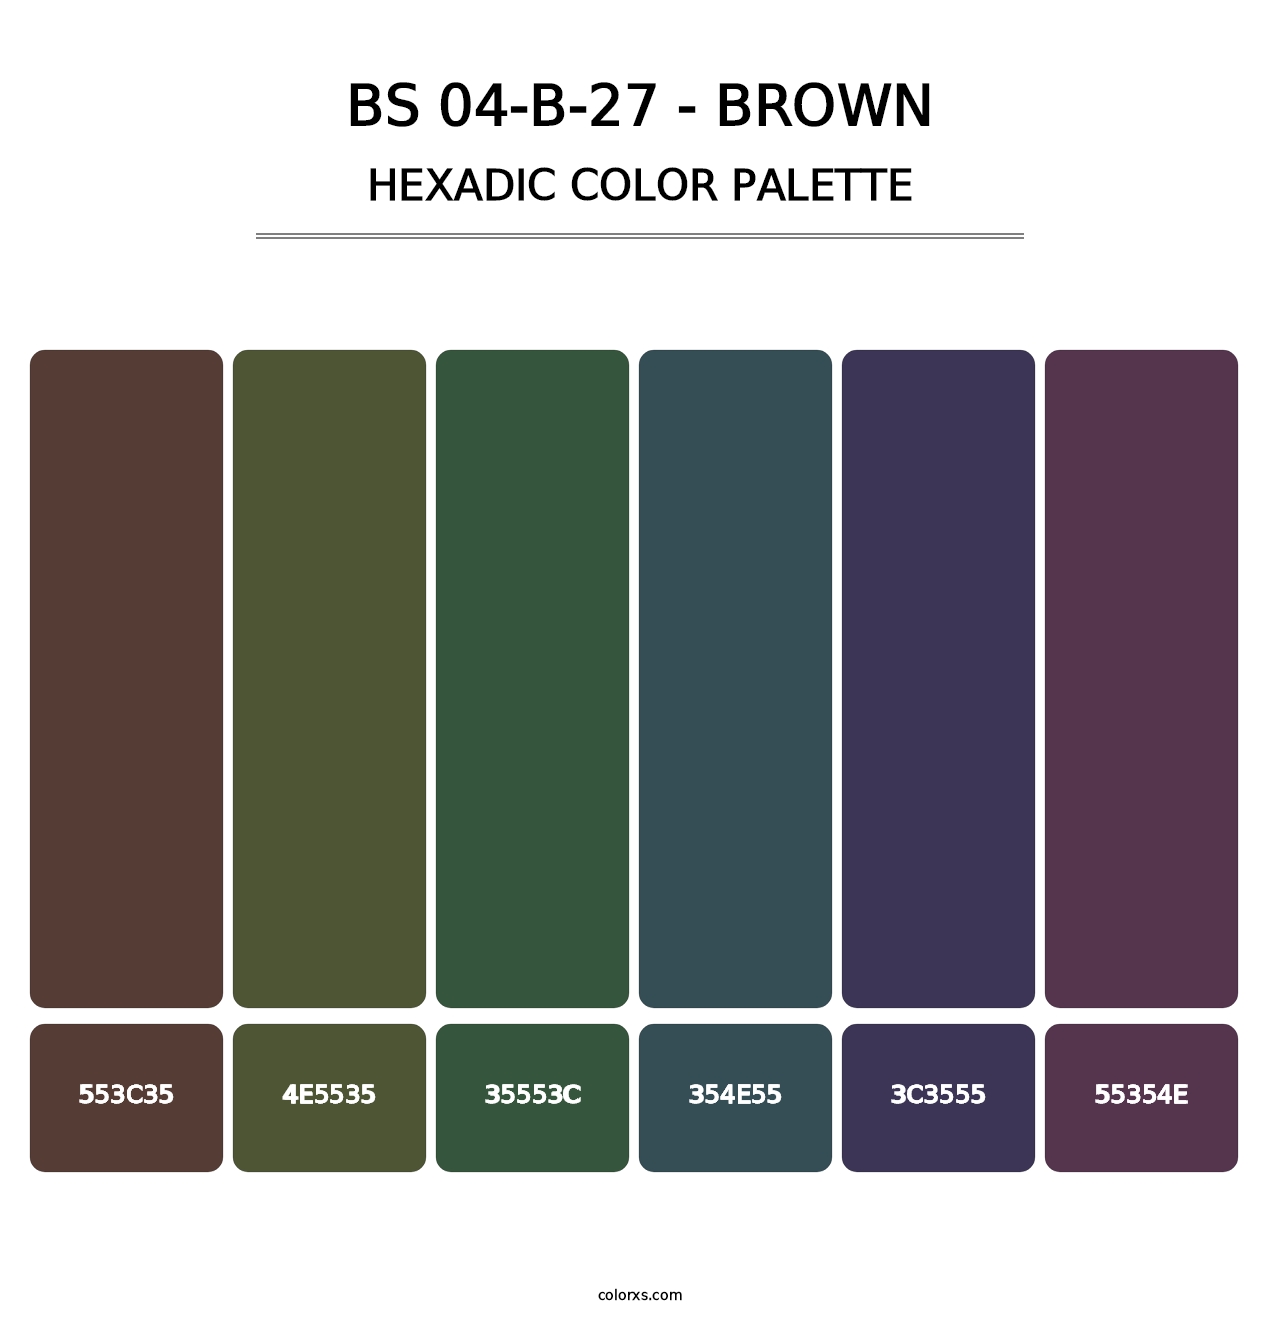 BS 04-B-27 - Brown - Hexadic Color Palette